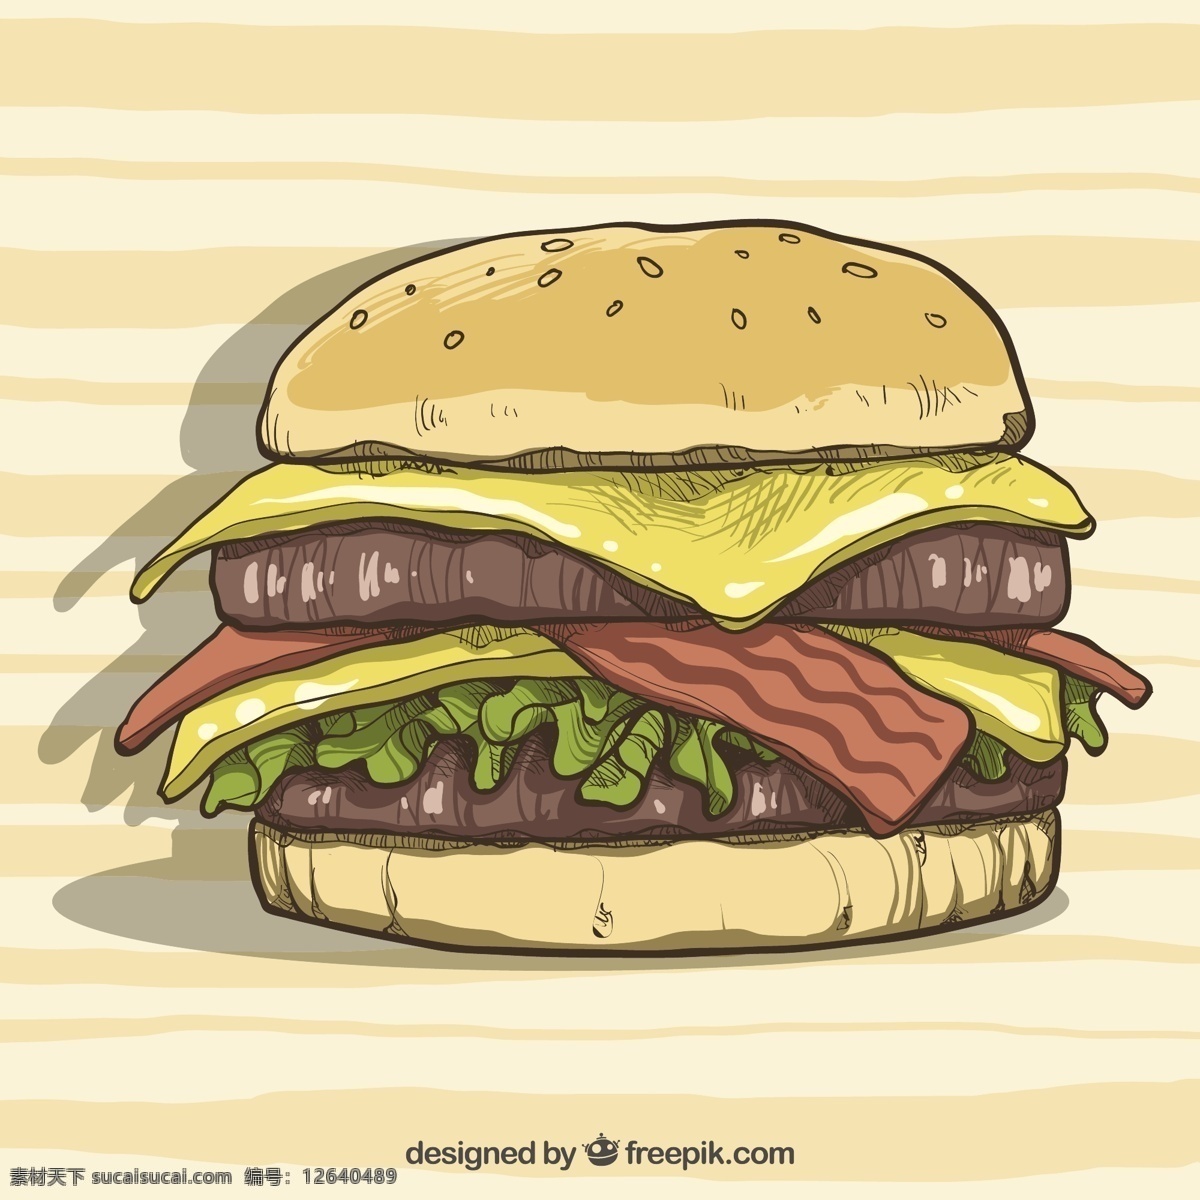 美味 汉堡 配 奶酪 培根 背景 食物 菜单 手 手绘 颜色 丰富多彩 快餐 食物菜单 吃 汉堡包 番茄 午餐 小吃 餐 画 背景色